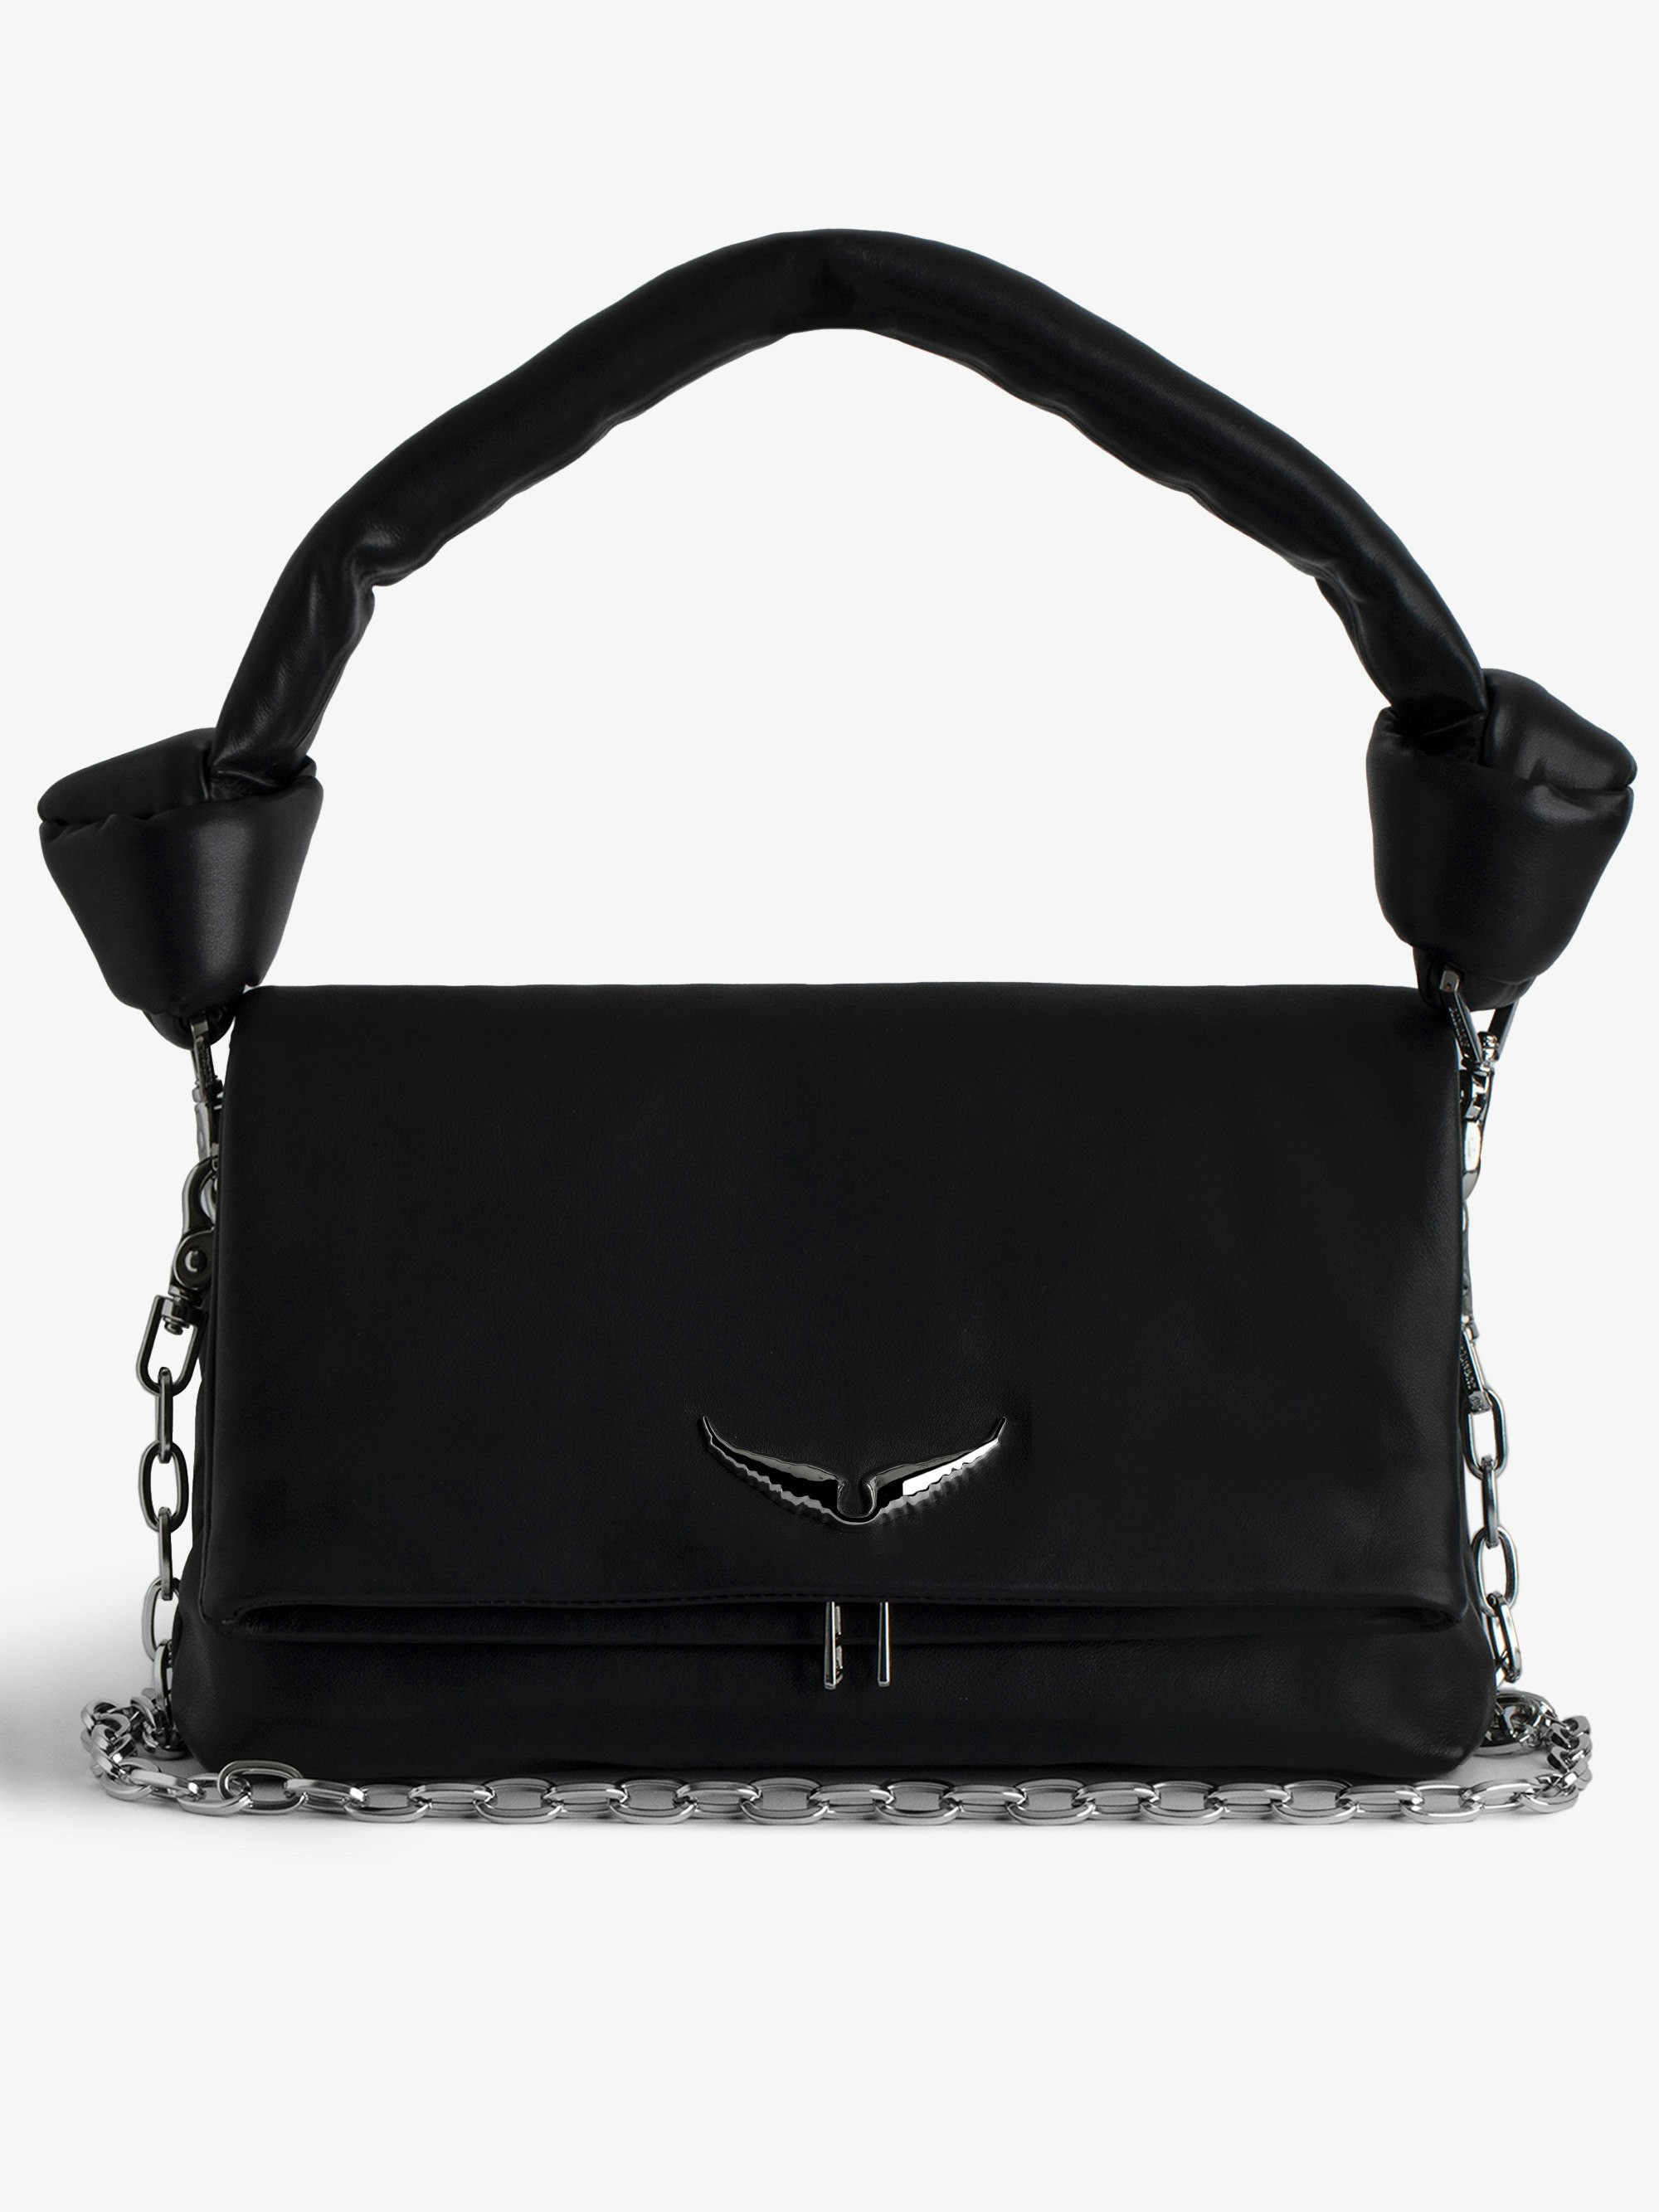 Tasche Rocky Eternal - Schwarze Handtasche aus Glattleder mit geknotetem Henkel und Umhängekette.